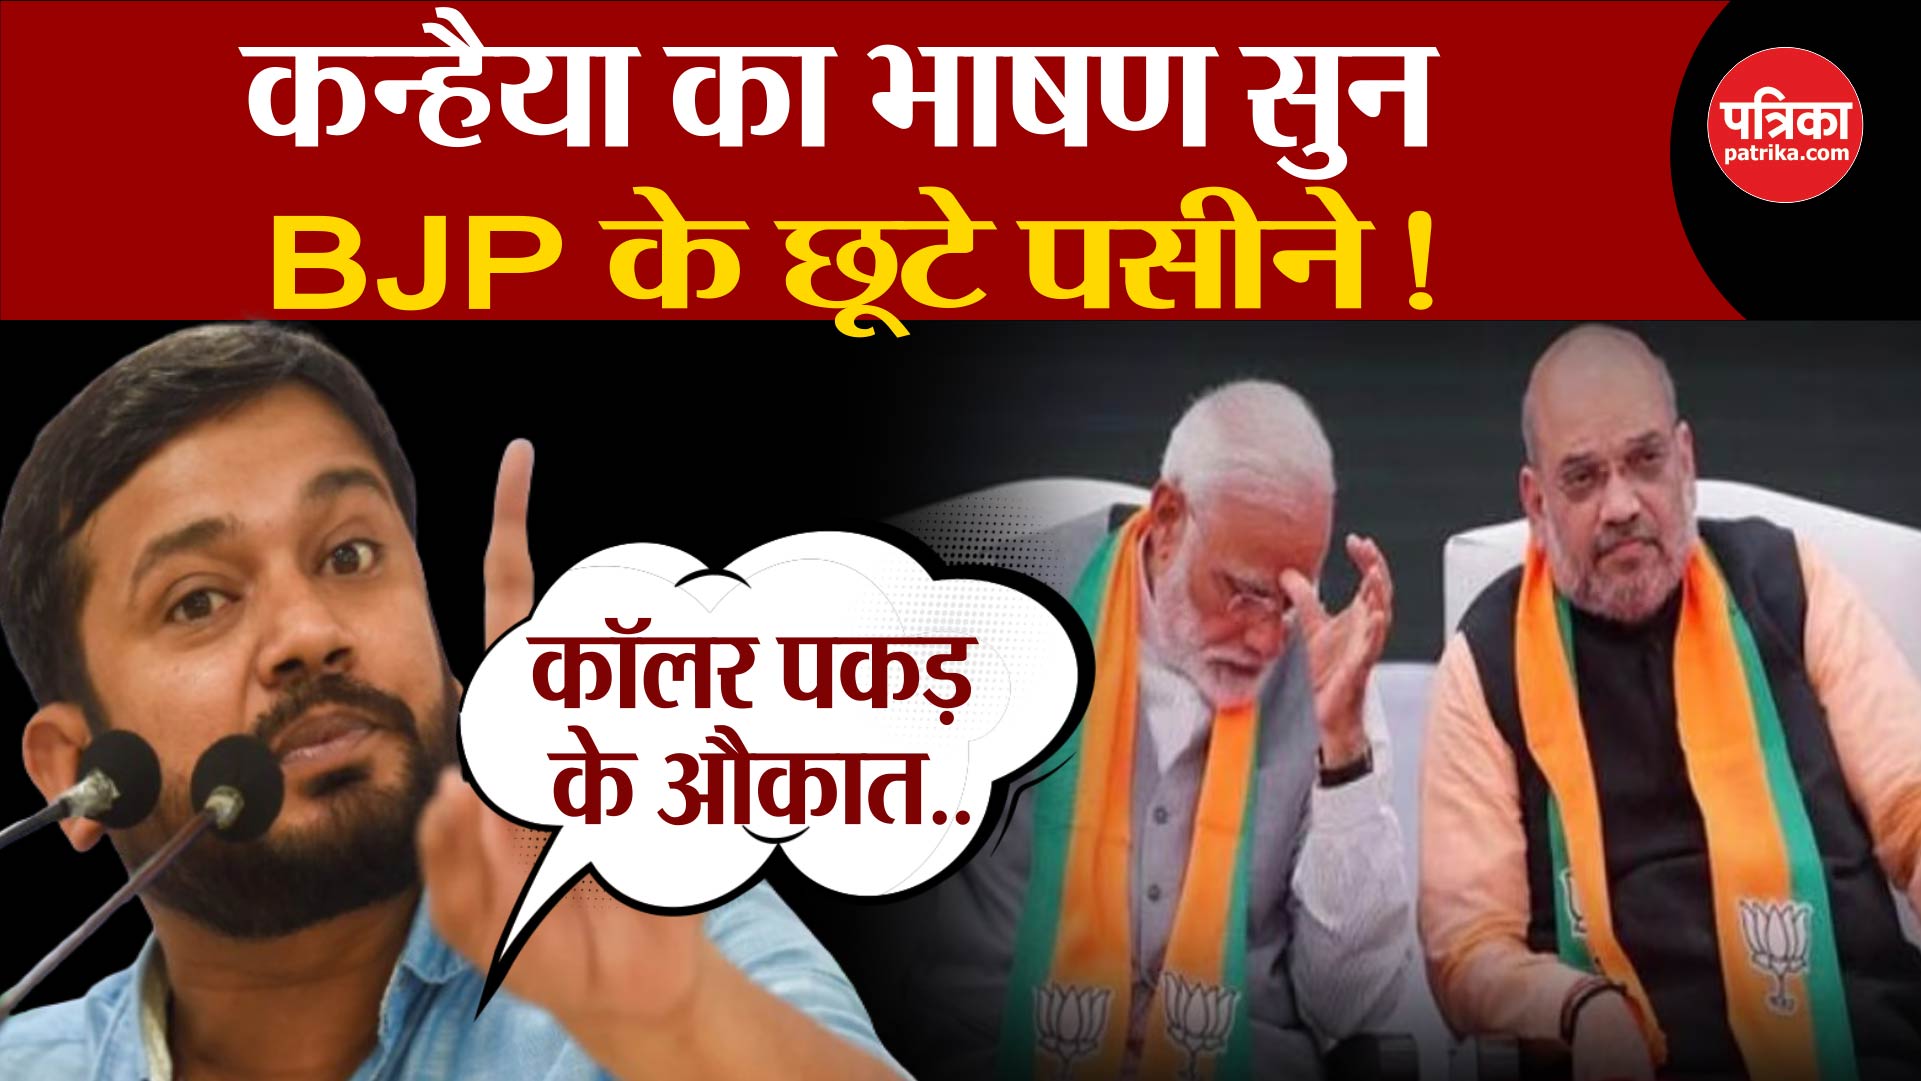 कन्हैया का भाषण सुन, BJP के छूटे पसीने!